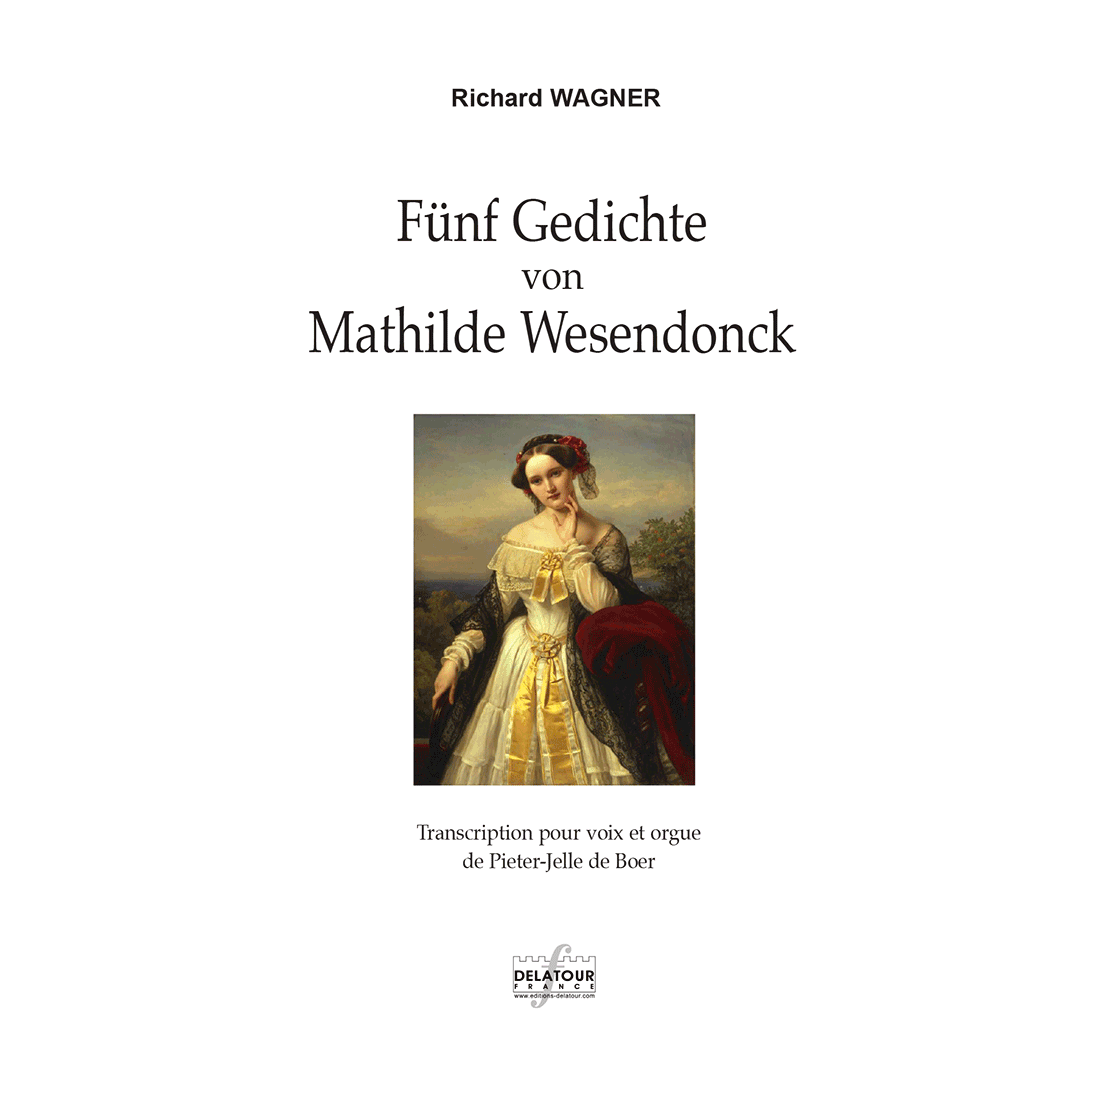 Fünf Gedichte von Mathilde Wesendonck for voice and organ